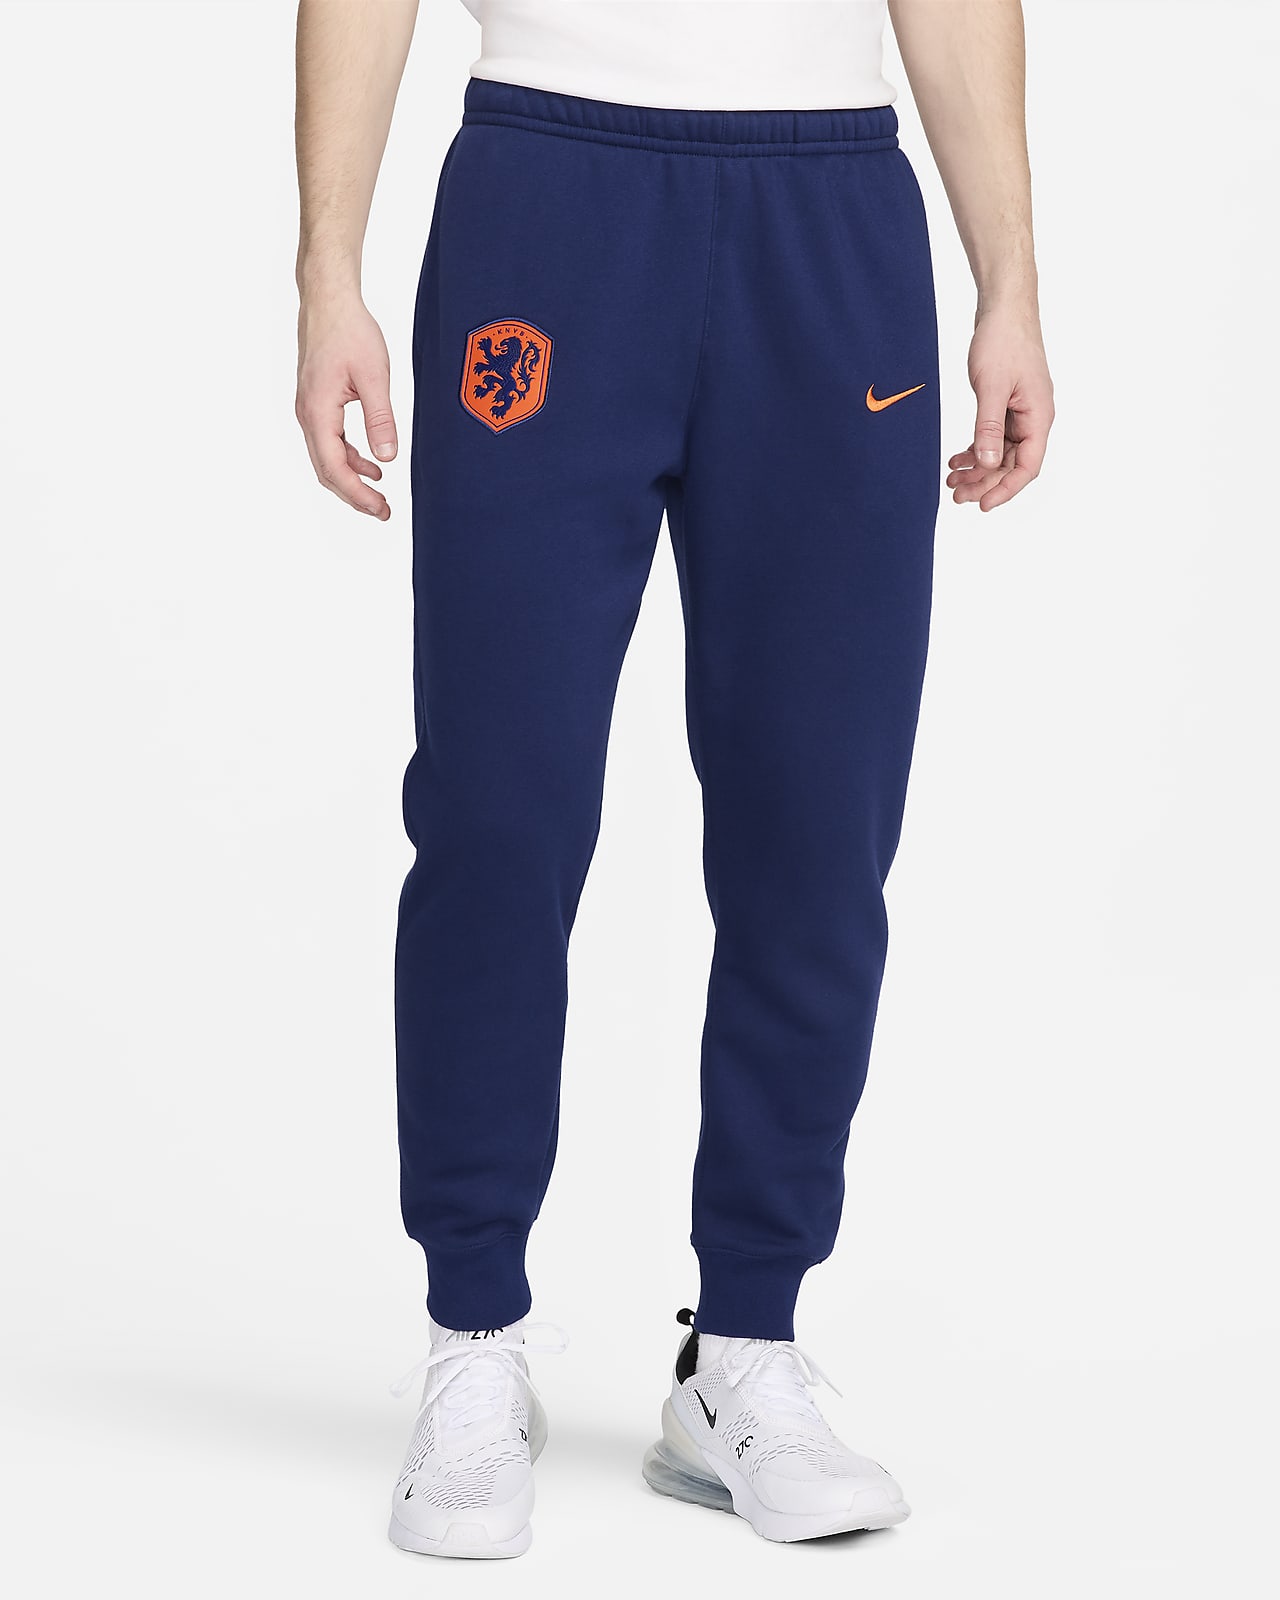 Nederland Club Nike voetbaljoggingbroek van fleece voor heren